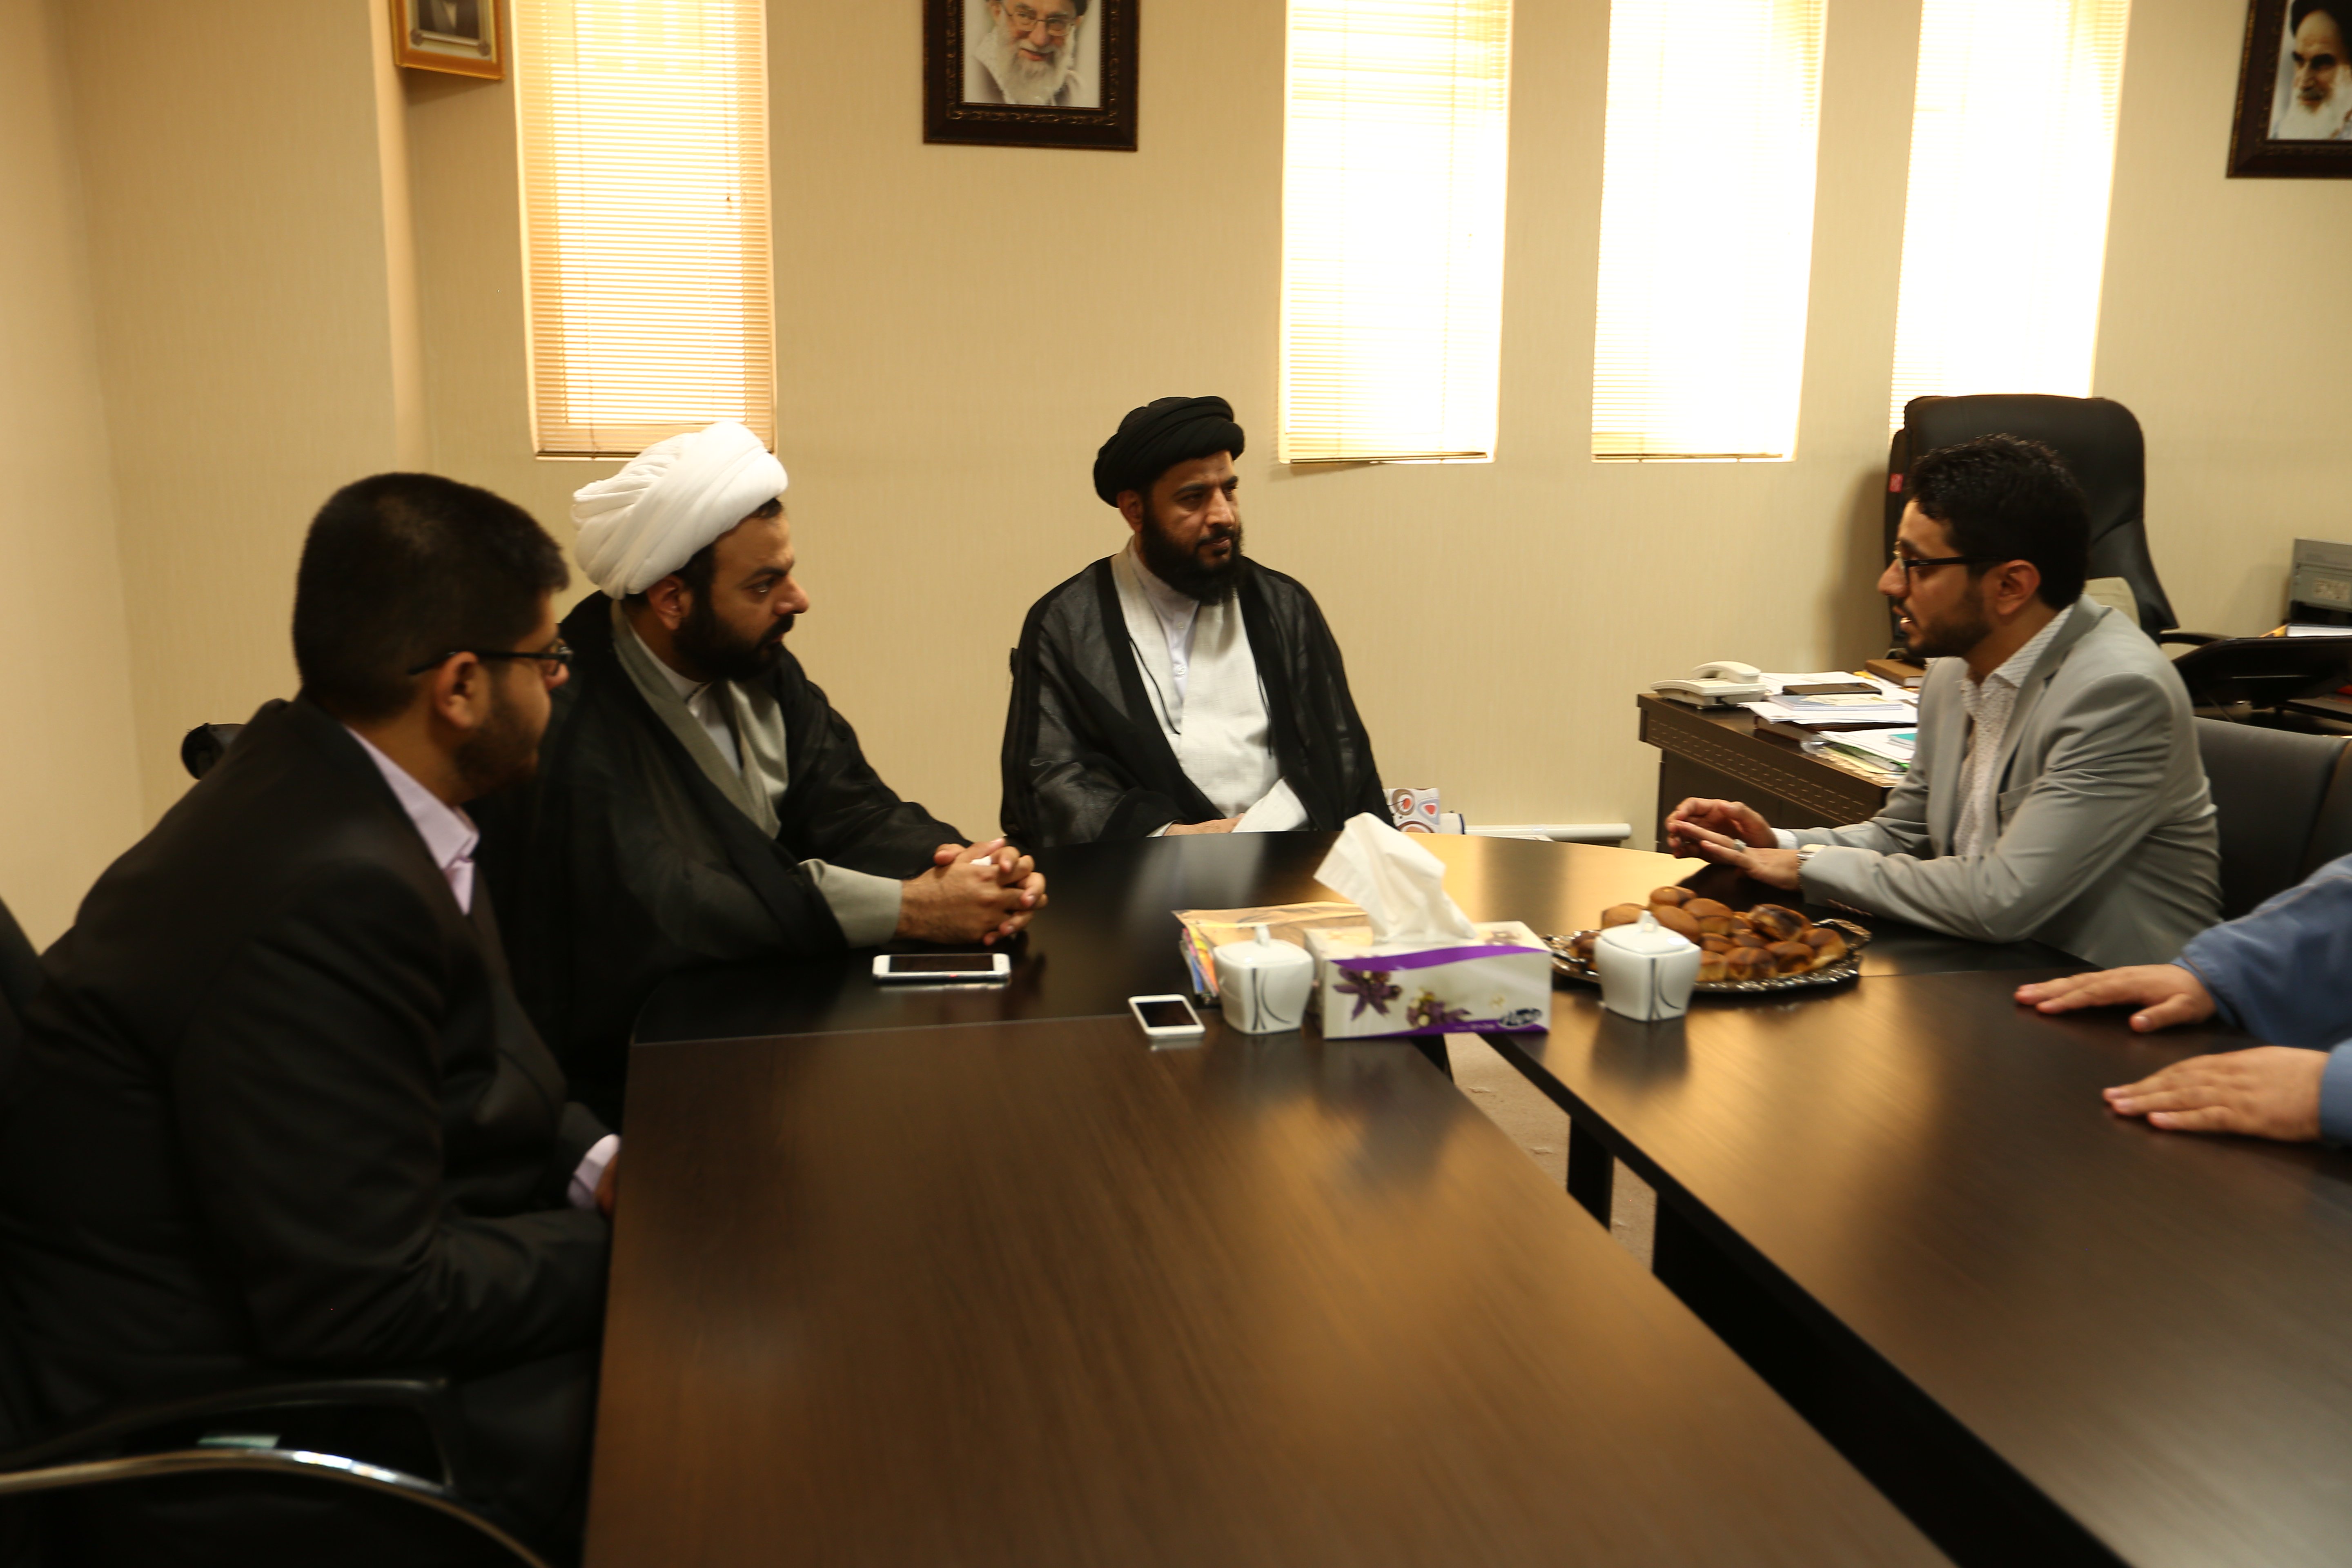 معهد القرآن الكريم يبرم إتفاقية تعاون أولية مع أفضل الجامعات القرآنية في العالم